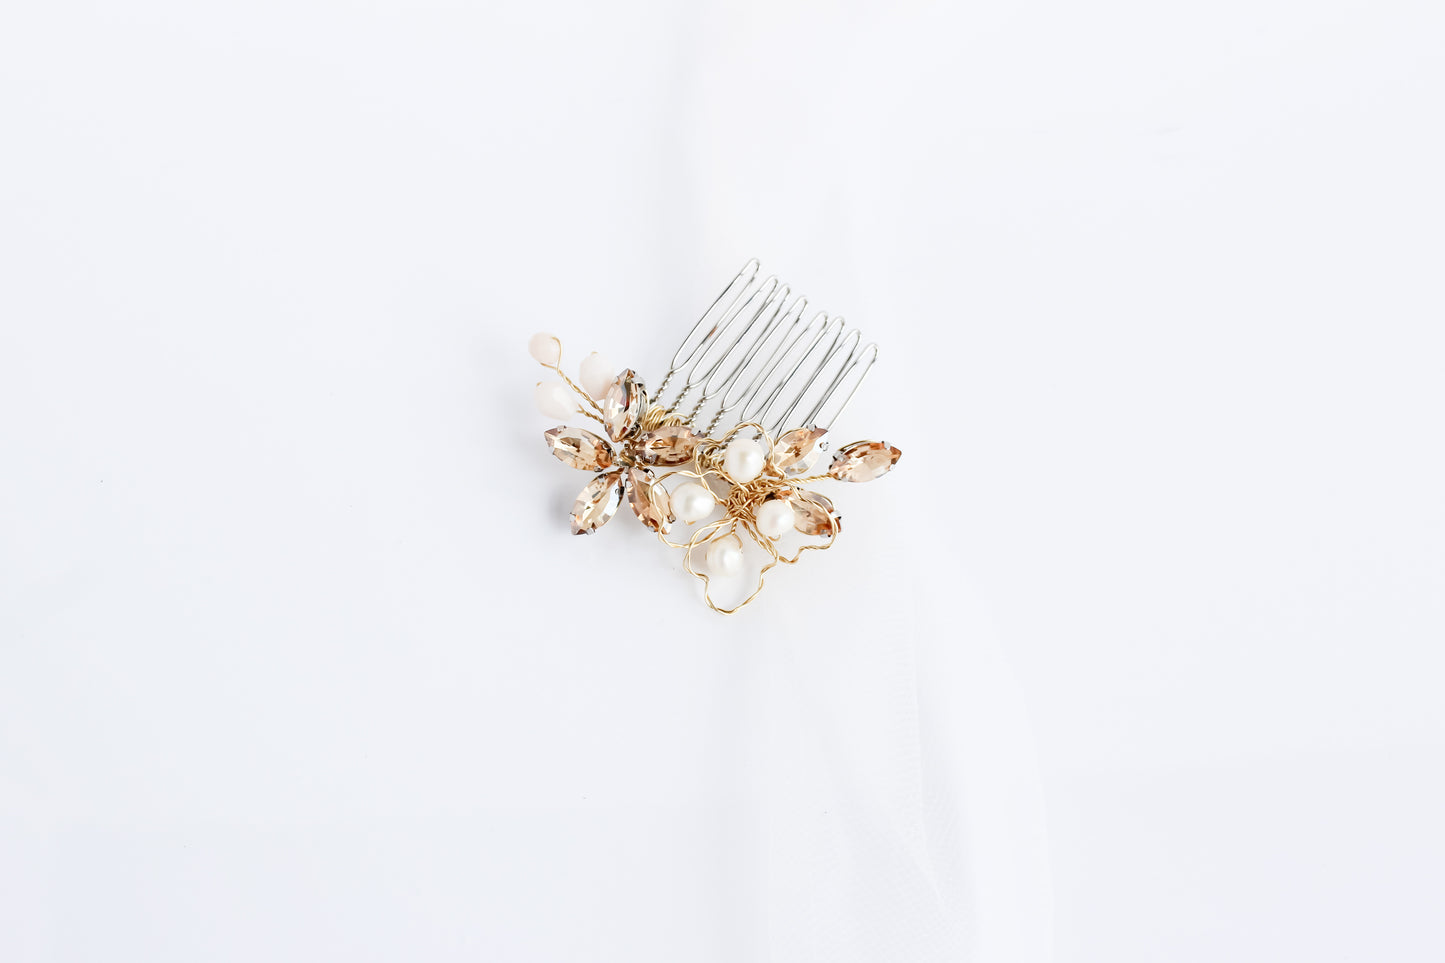 Small gold crystal bridal hair comb